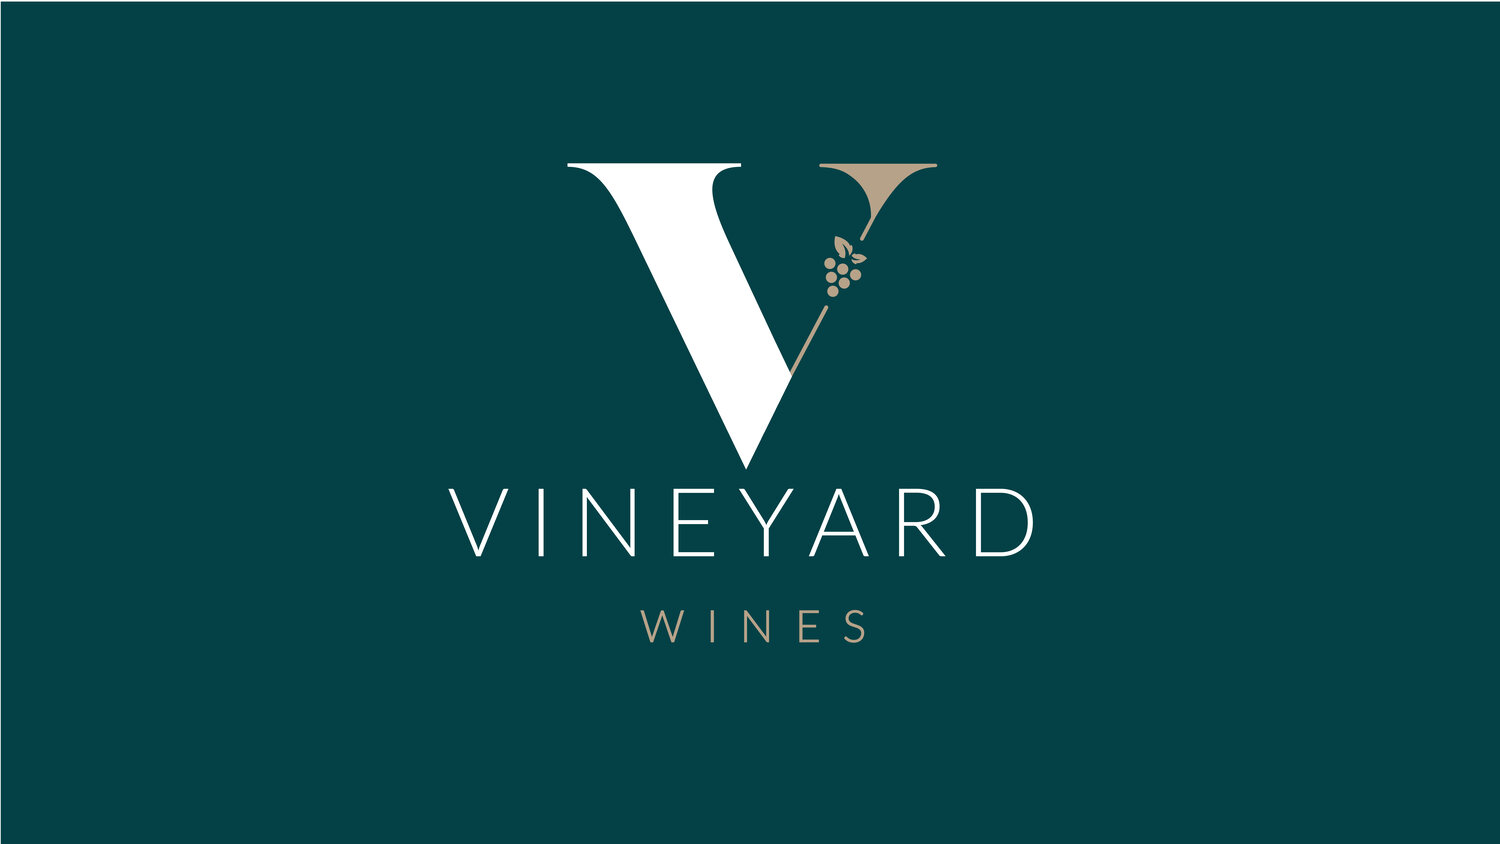 VineYard Wines -Wine Suppliers